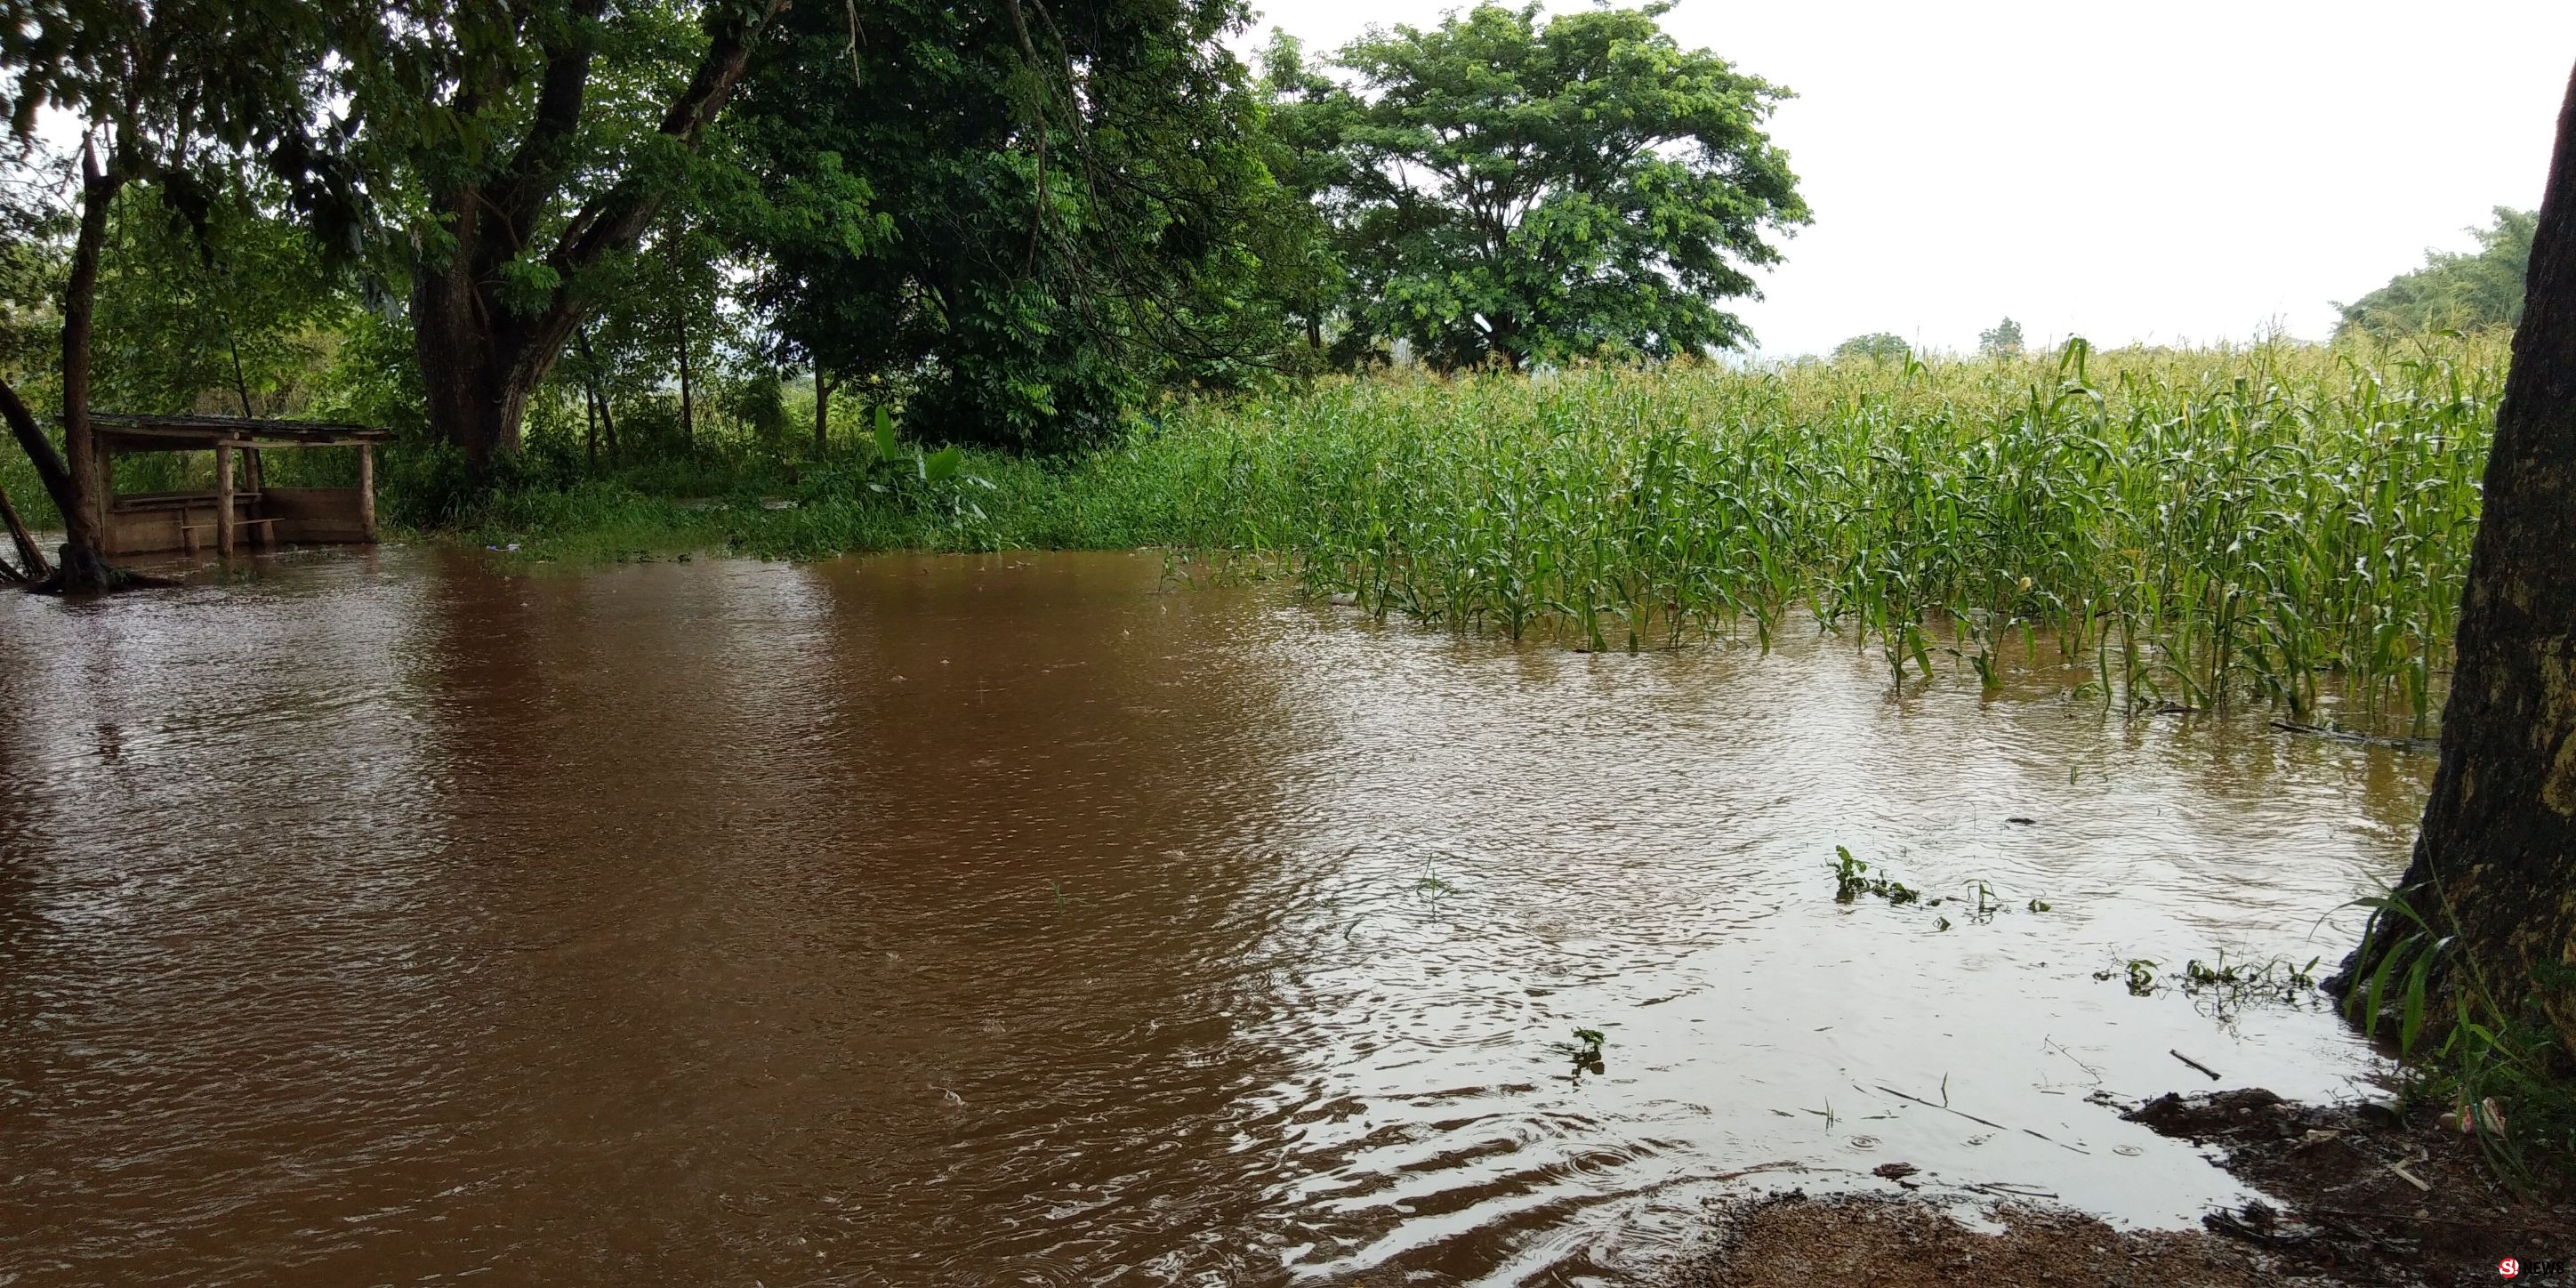 จ.ตาก - ฝนตกหนักชายแดนไทย-พม่า น้ำท่วมหนัก เกษตรกรปาดน้ำตาพร้อมหยาดฝน